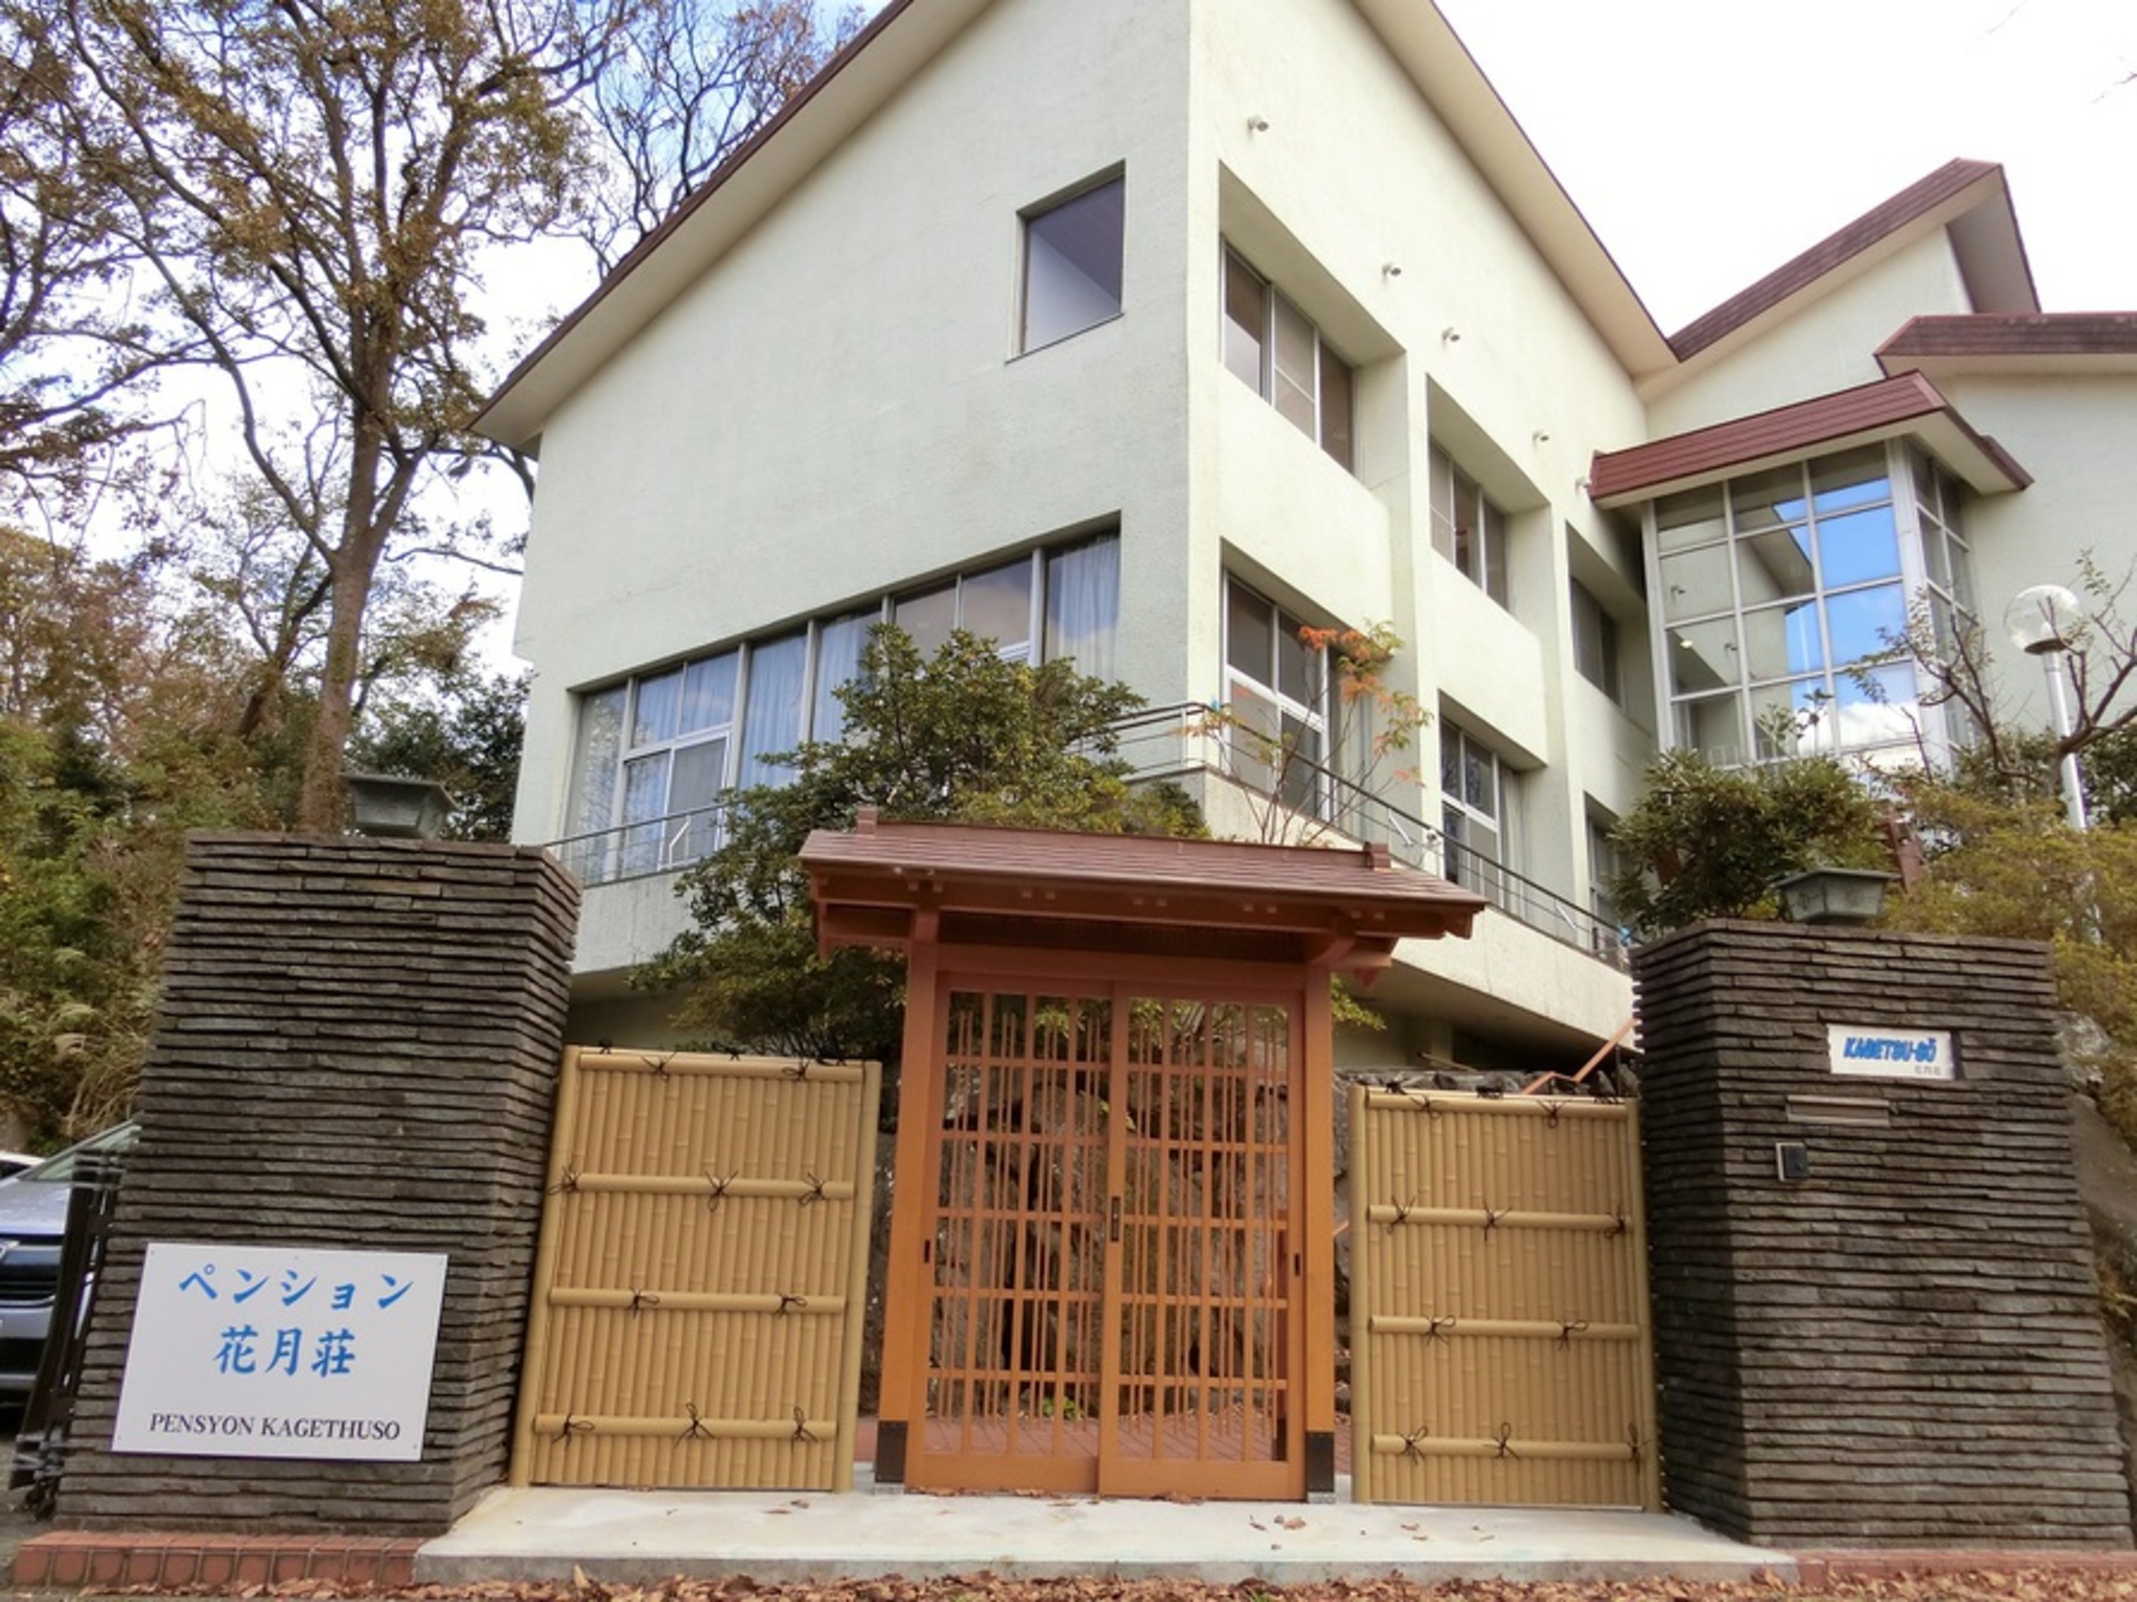 お泊りいただける皆さんを、格調高い日本風の門構えがお迎えいたします。格子戸をあけると、貴方のプライベート別荘ライフの始まりです。